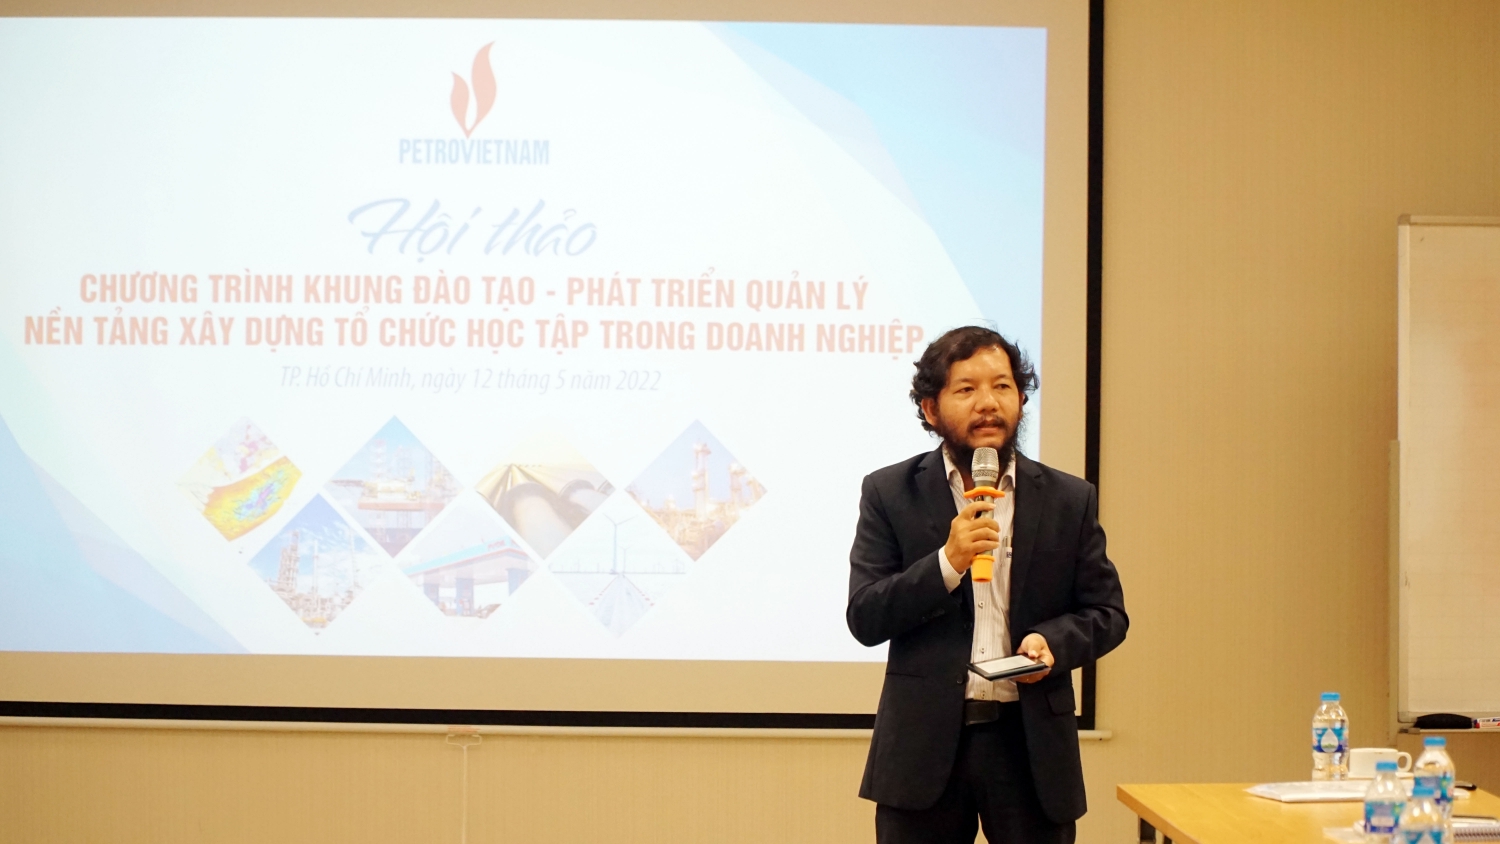 ông Châu Khiếu Minh – Giám đốc Trung tâm Bồi dưỡng nâng cao (ATC) – PVU, đại diện đơn vị phối hợp tổ chức Hội thảo